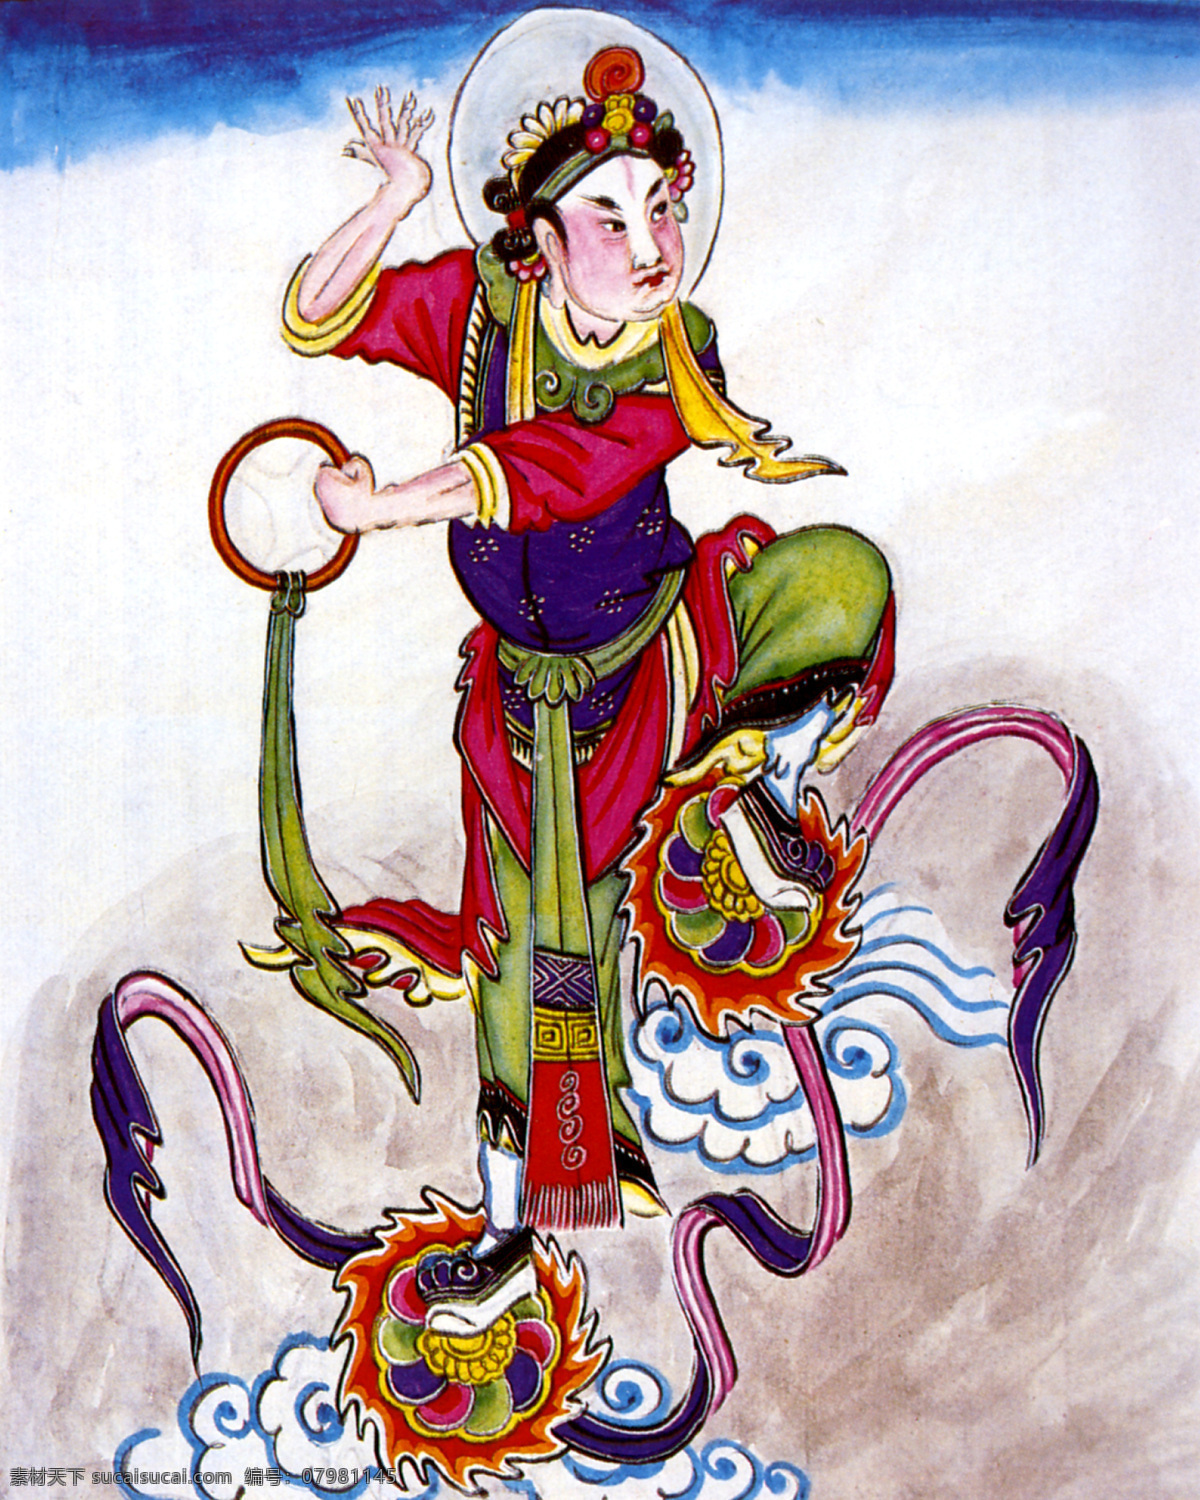 上八仙 哪吒 八仙过海 线稿 中国风 水墨画 古典插画 绘画书法 文化艺术